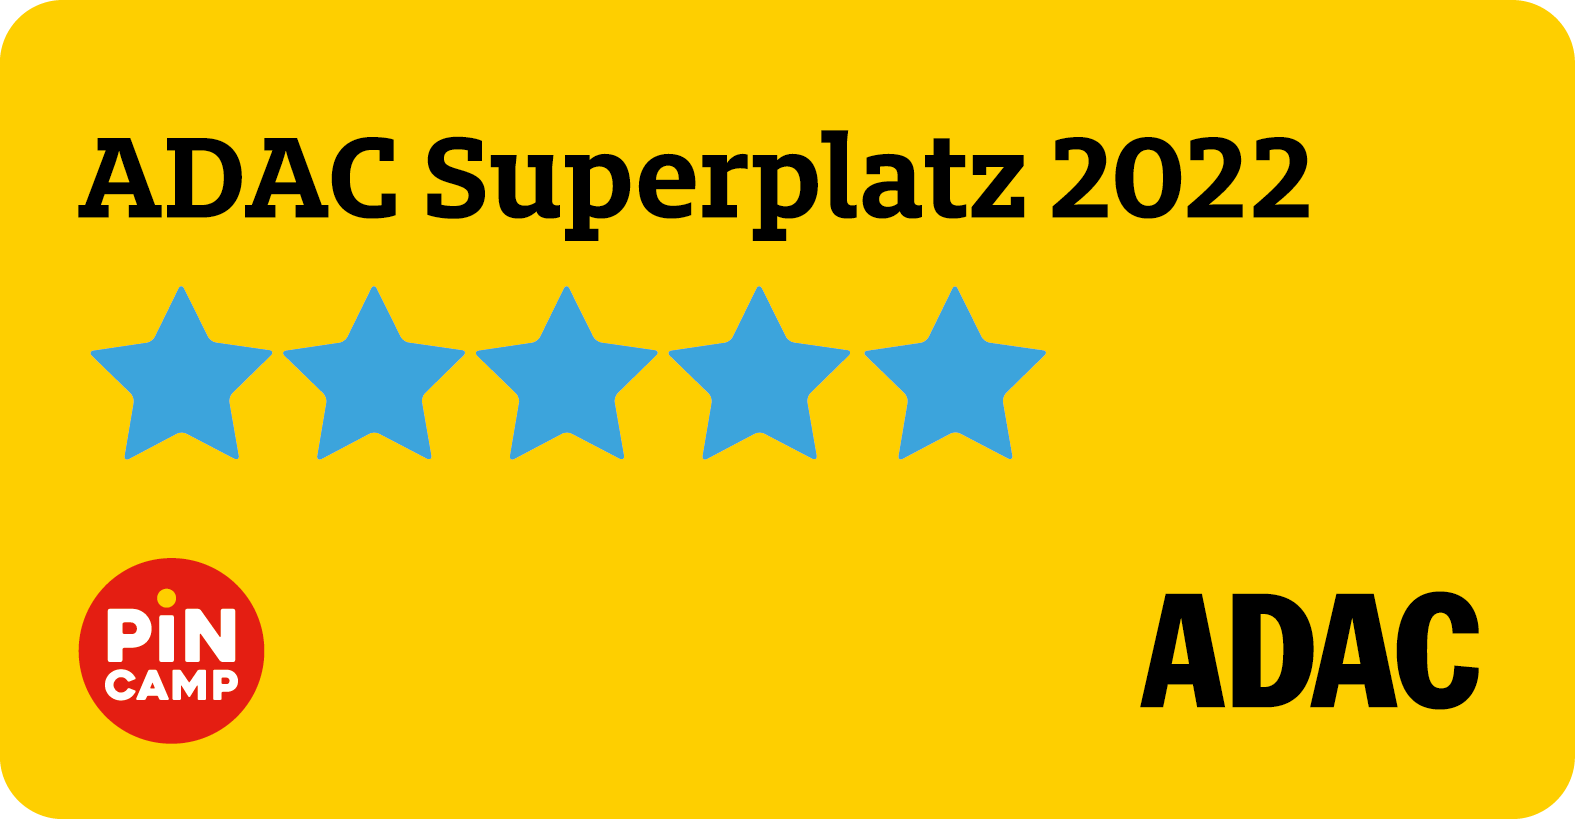 De Zandstuve ist durch den ADAC als Superplatz 2022 ausgezeichnet worden.